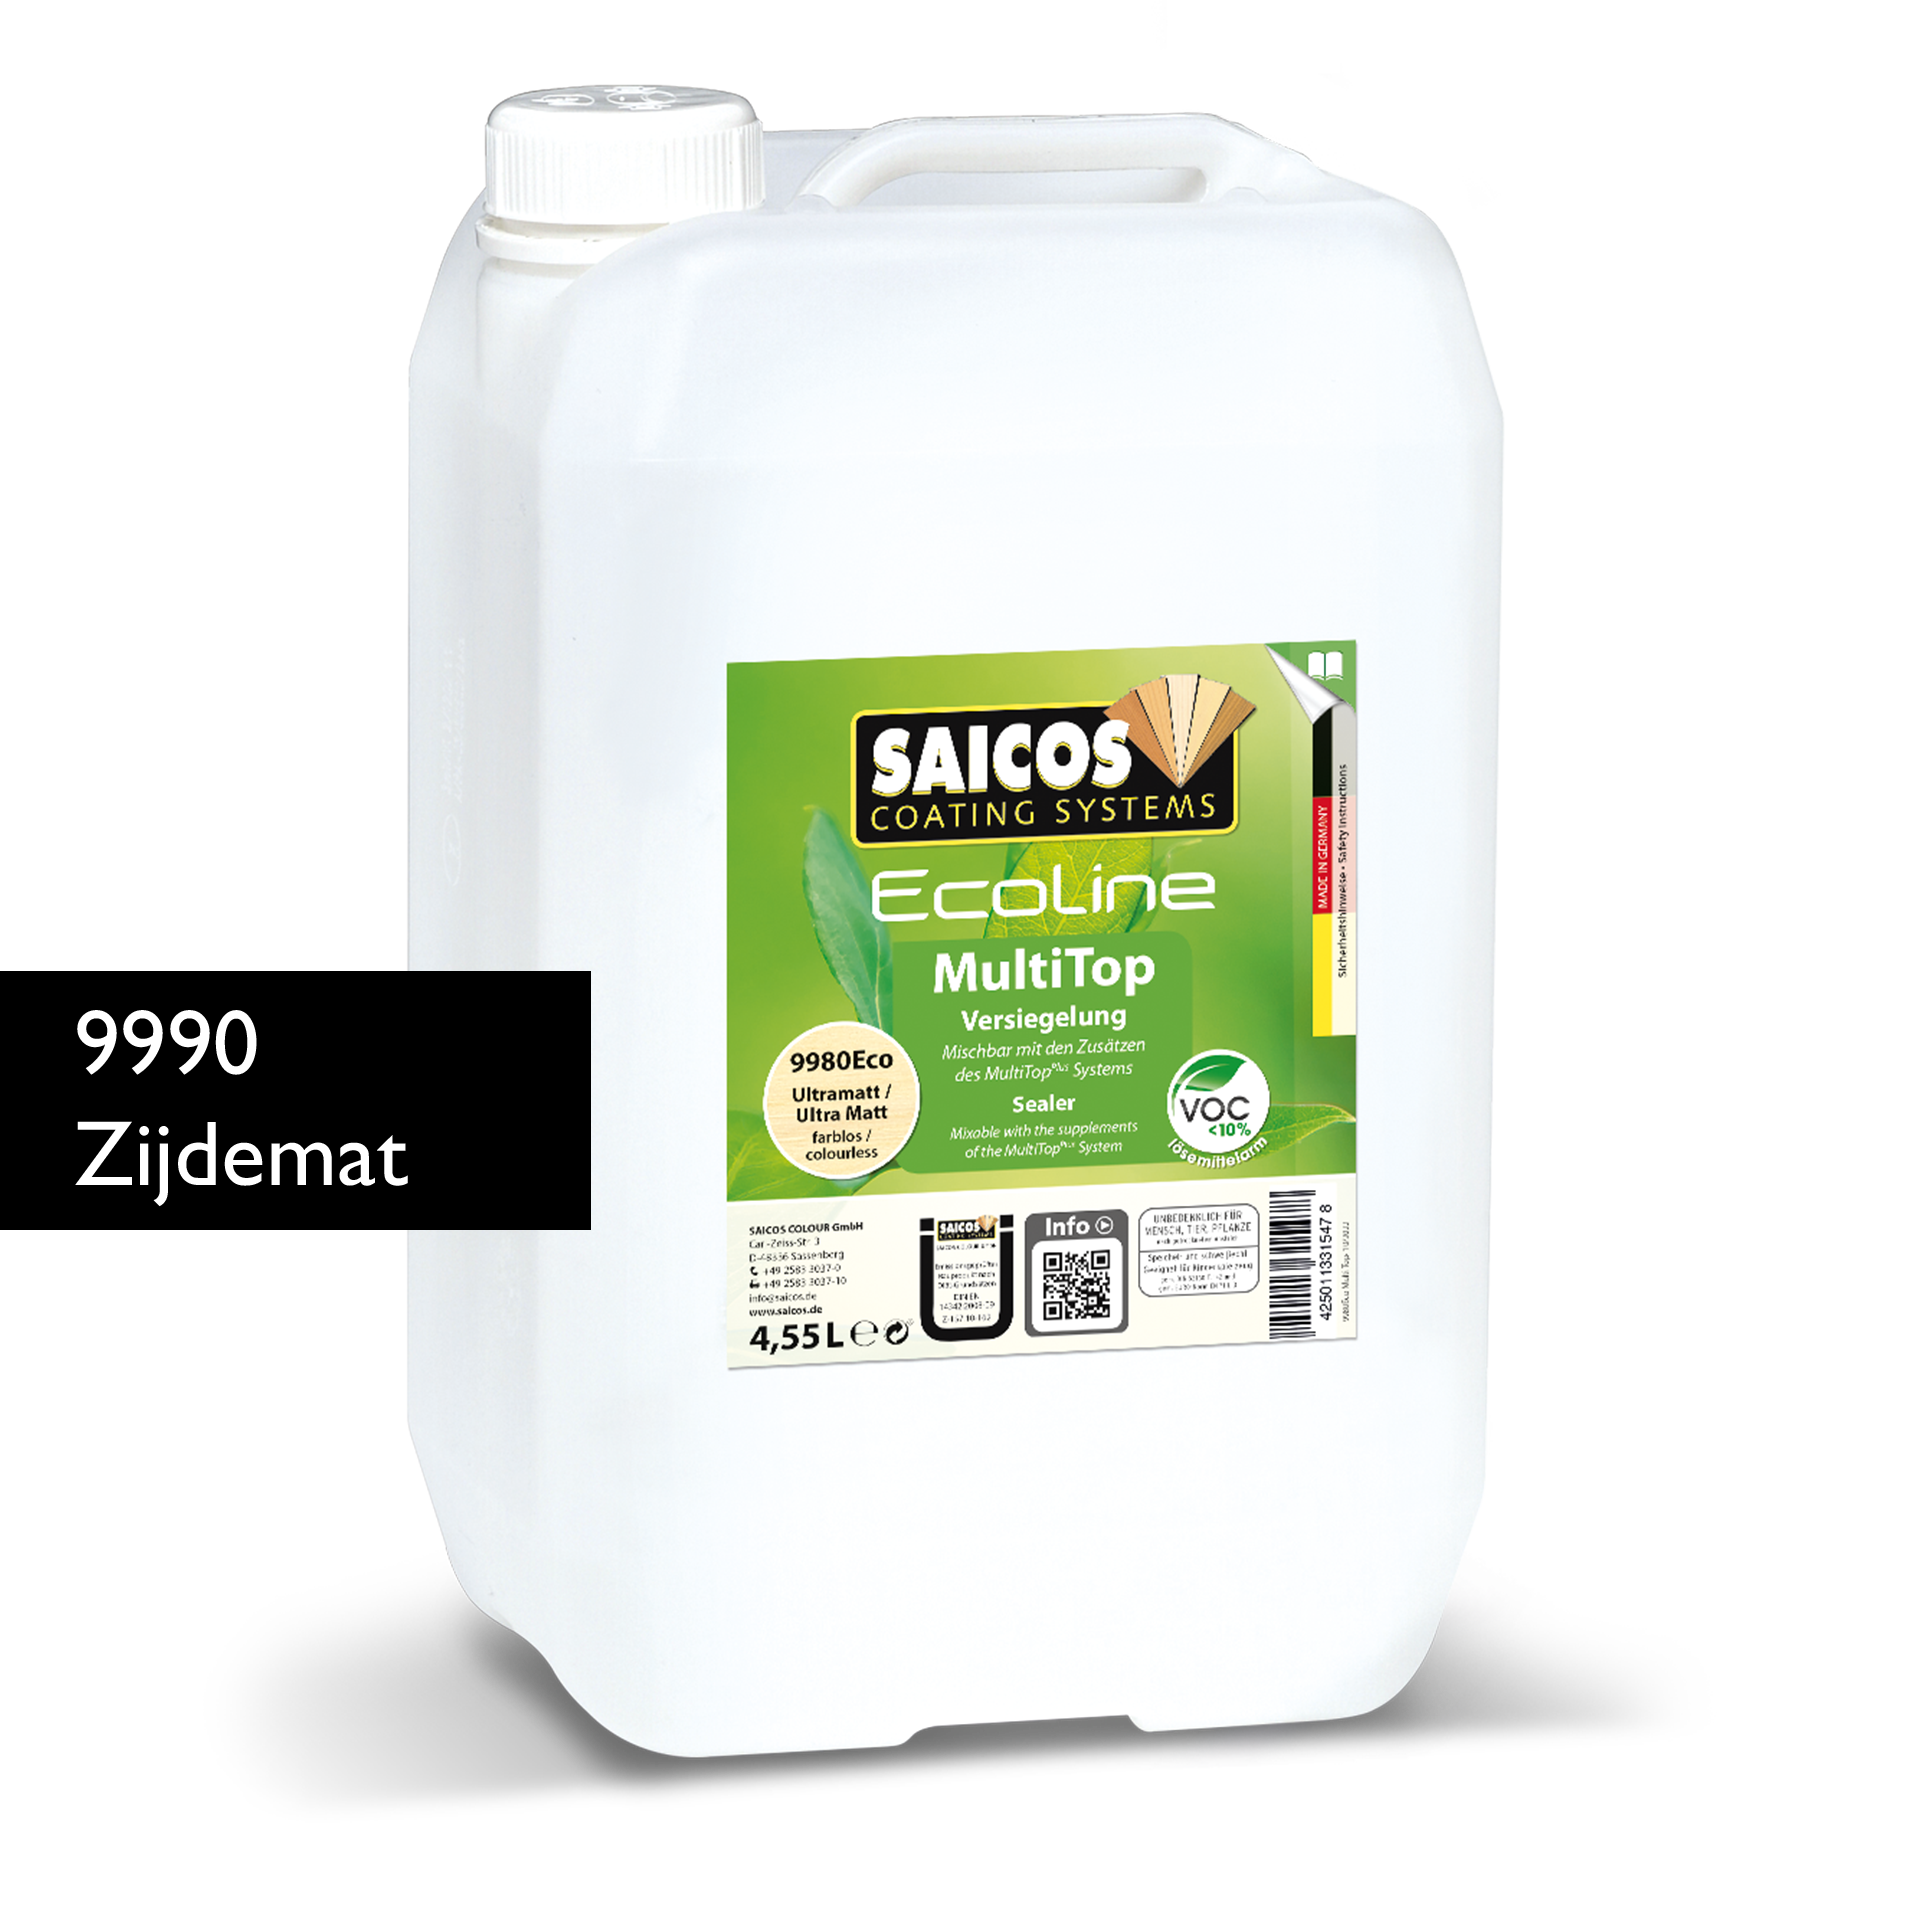 Afbeelding van Saicos Ecoline Multitop Zijdemat (9990Eco) 4,55L